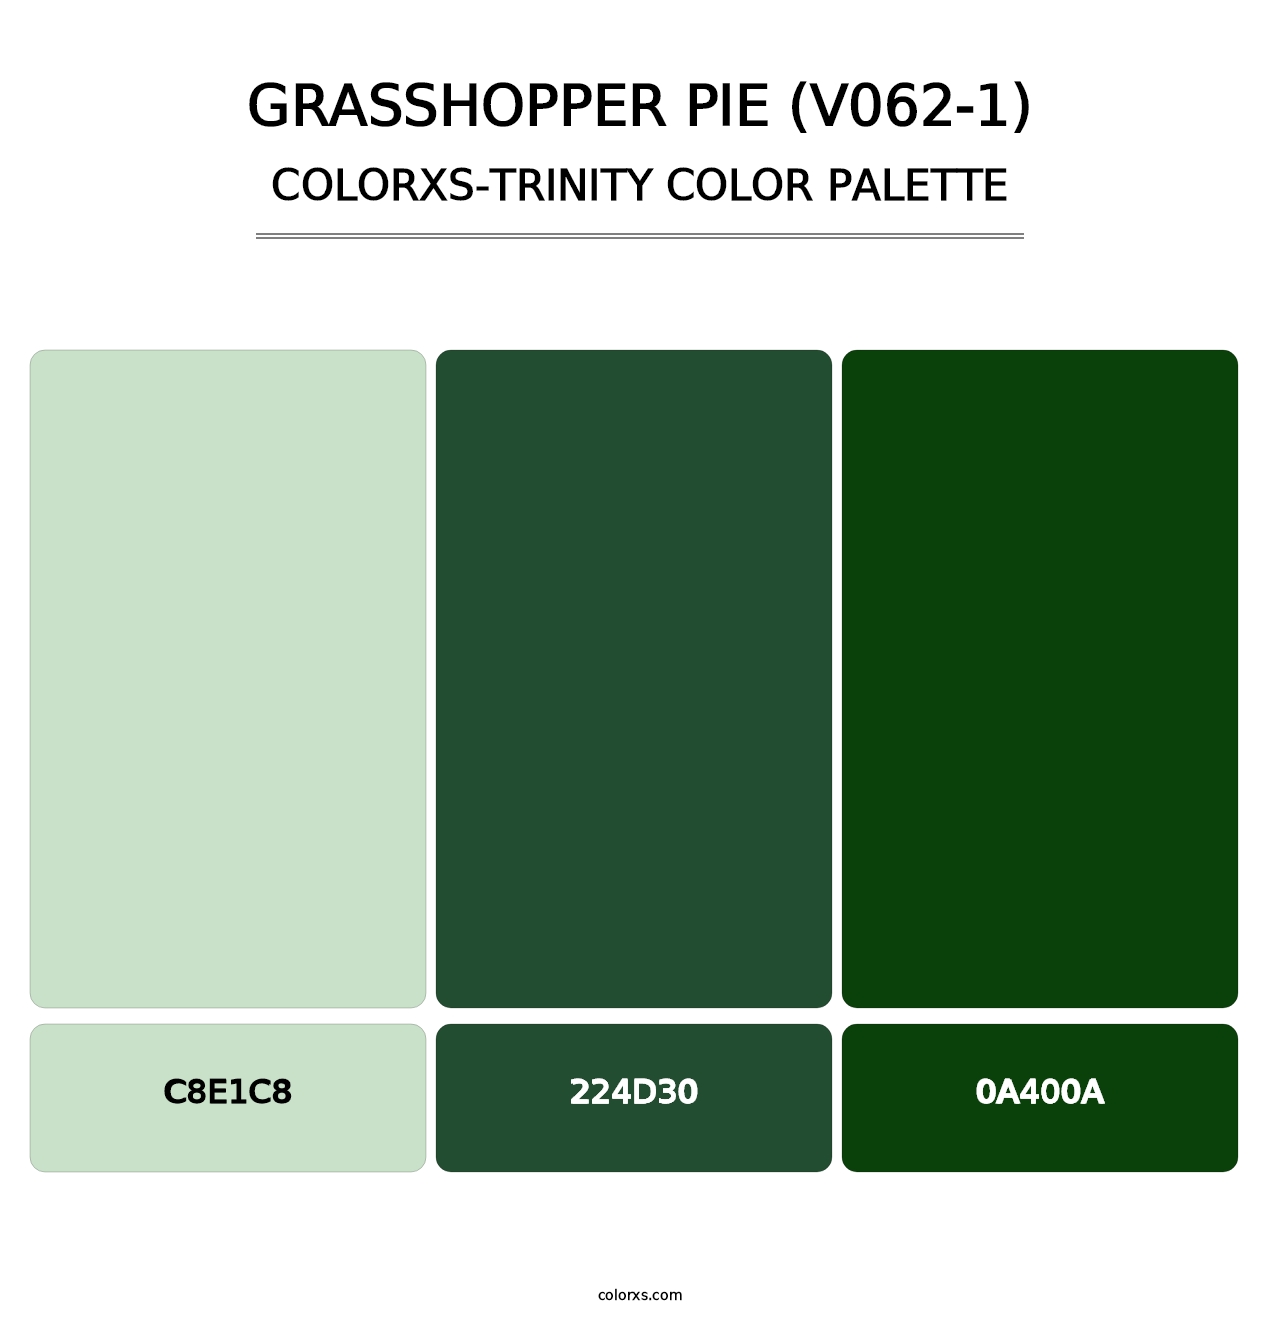 Grasshopper Pie (V062-1) - Colorxs Trinity Palette